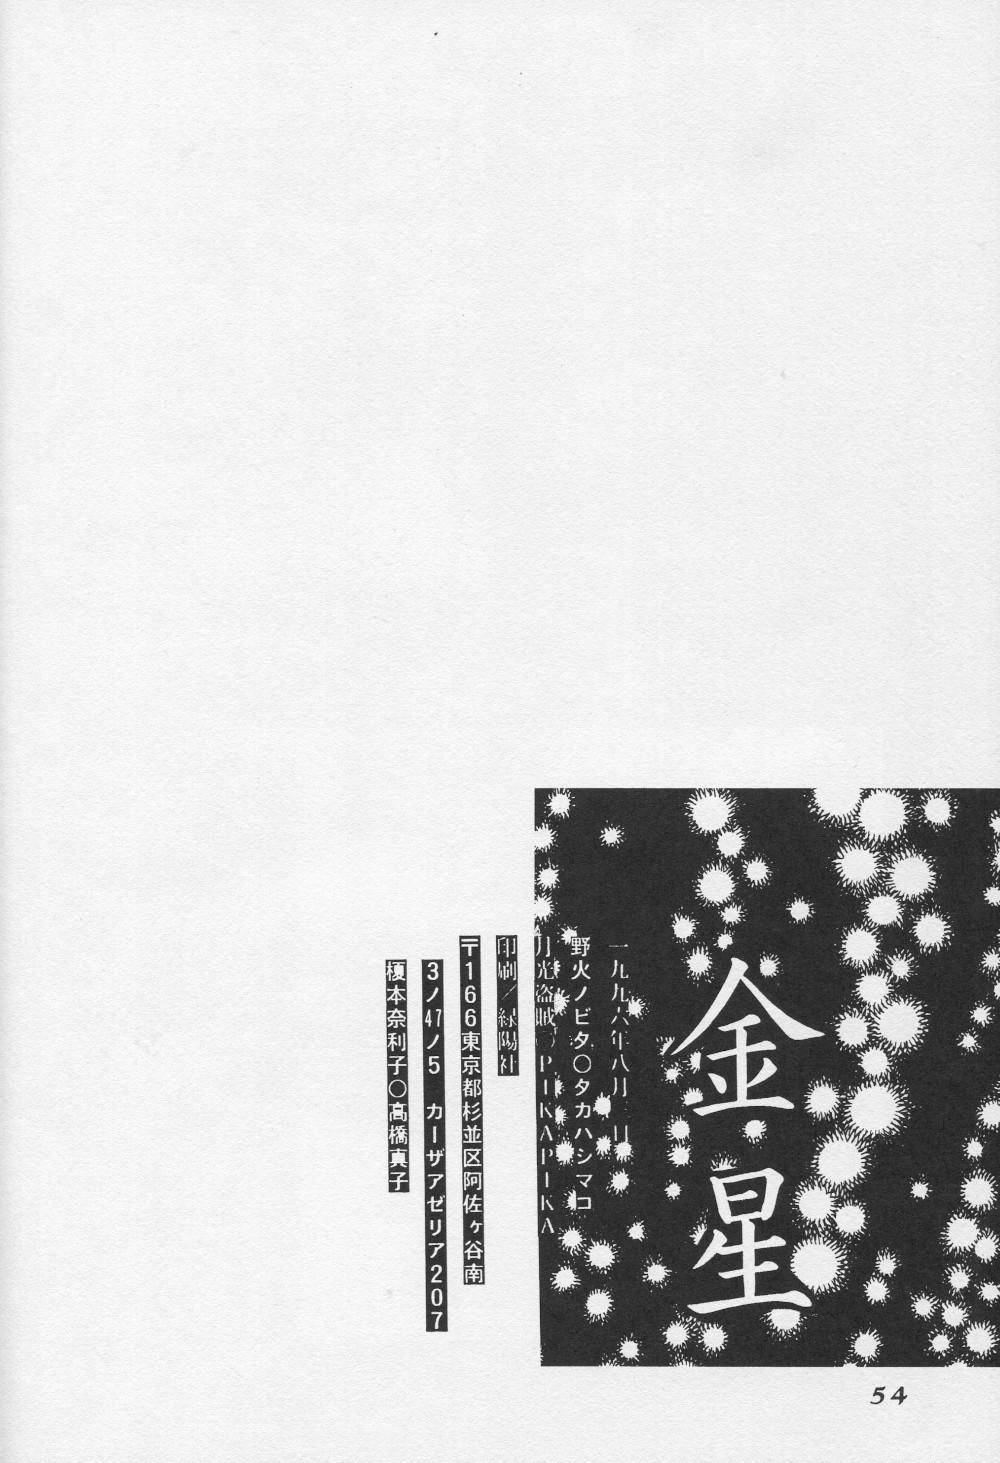 Ball Licking Kinsei - Neon genesis evangelion Underwear - Page 55